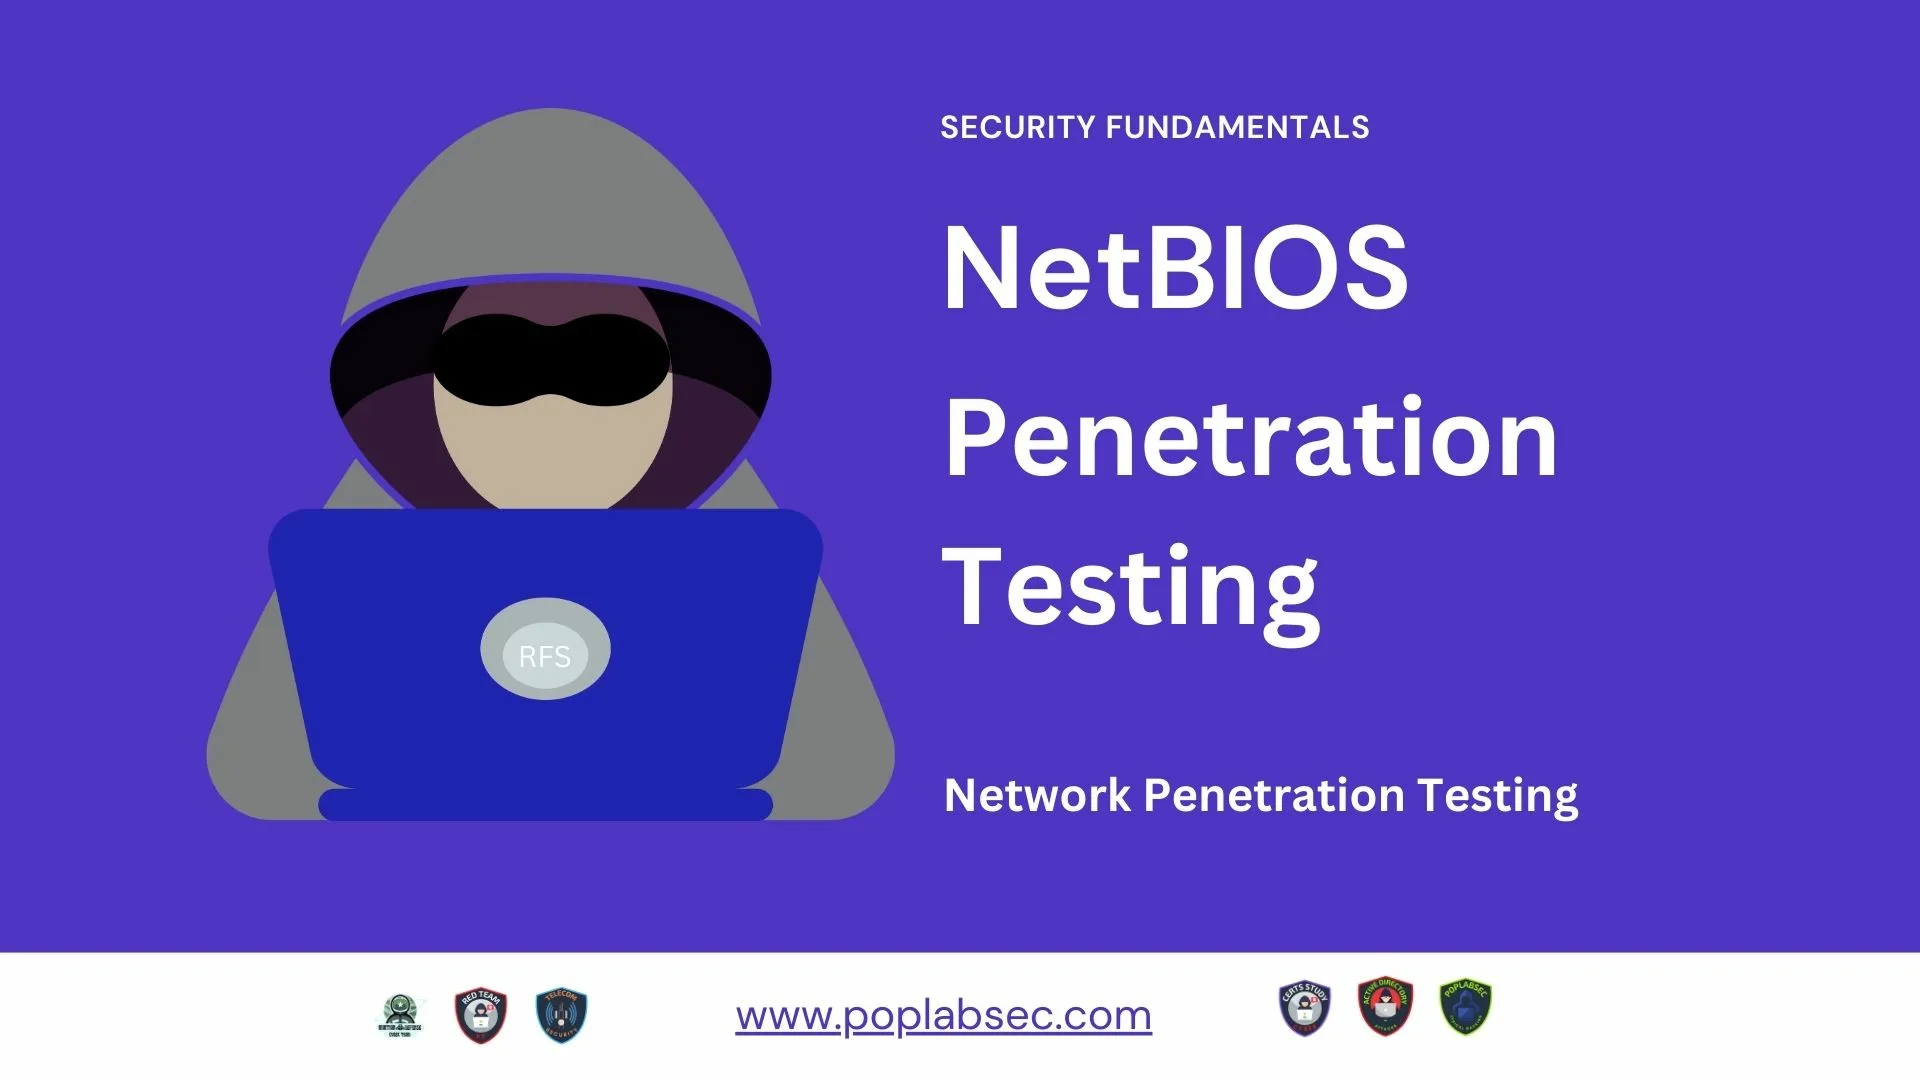 NetBIOS-Penetration-Testing